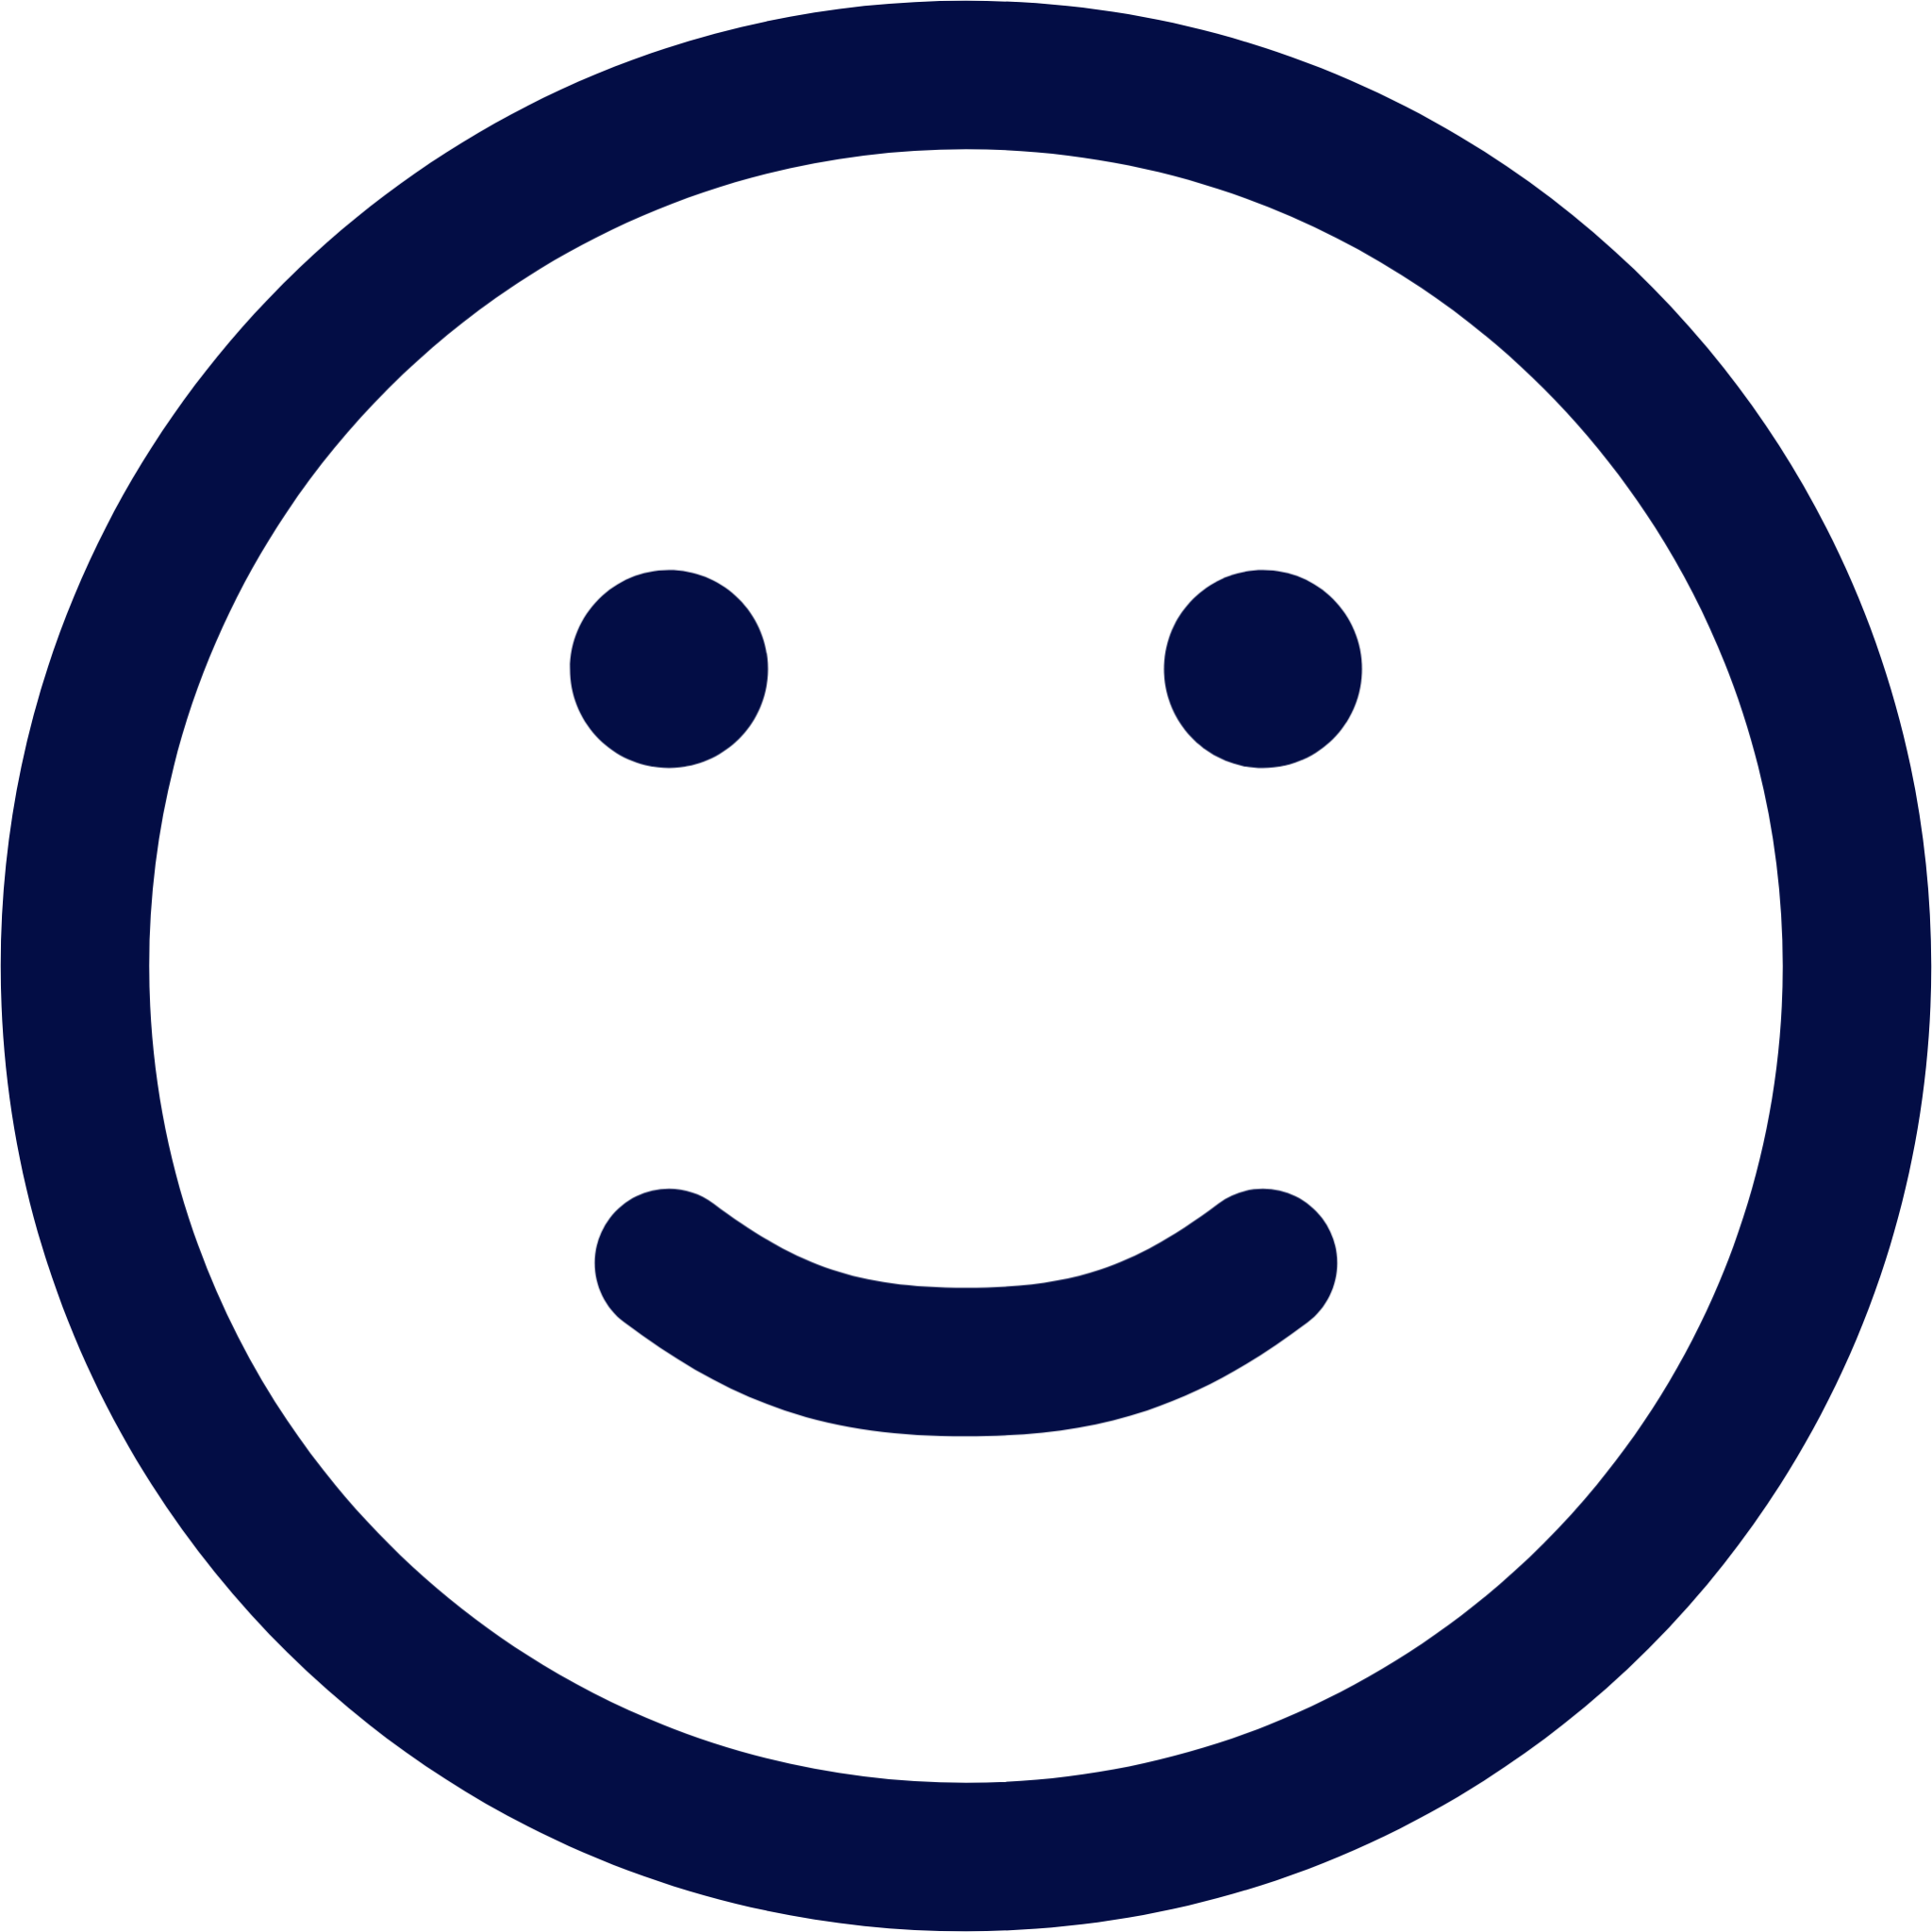 emoji smile icon